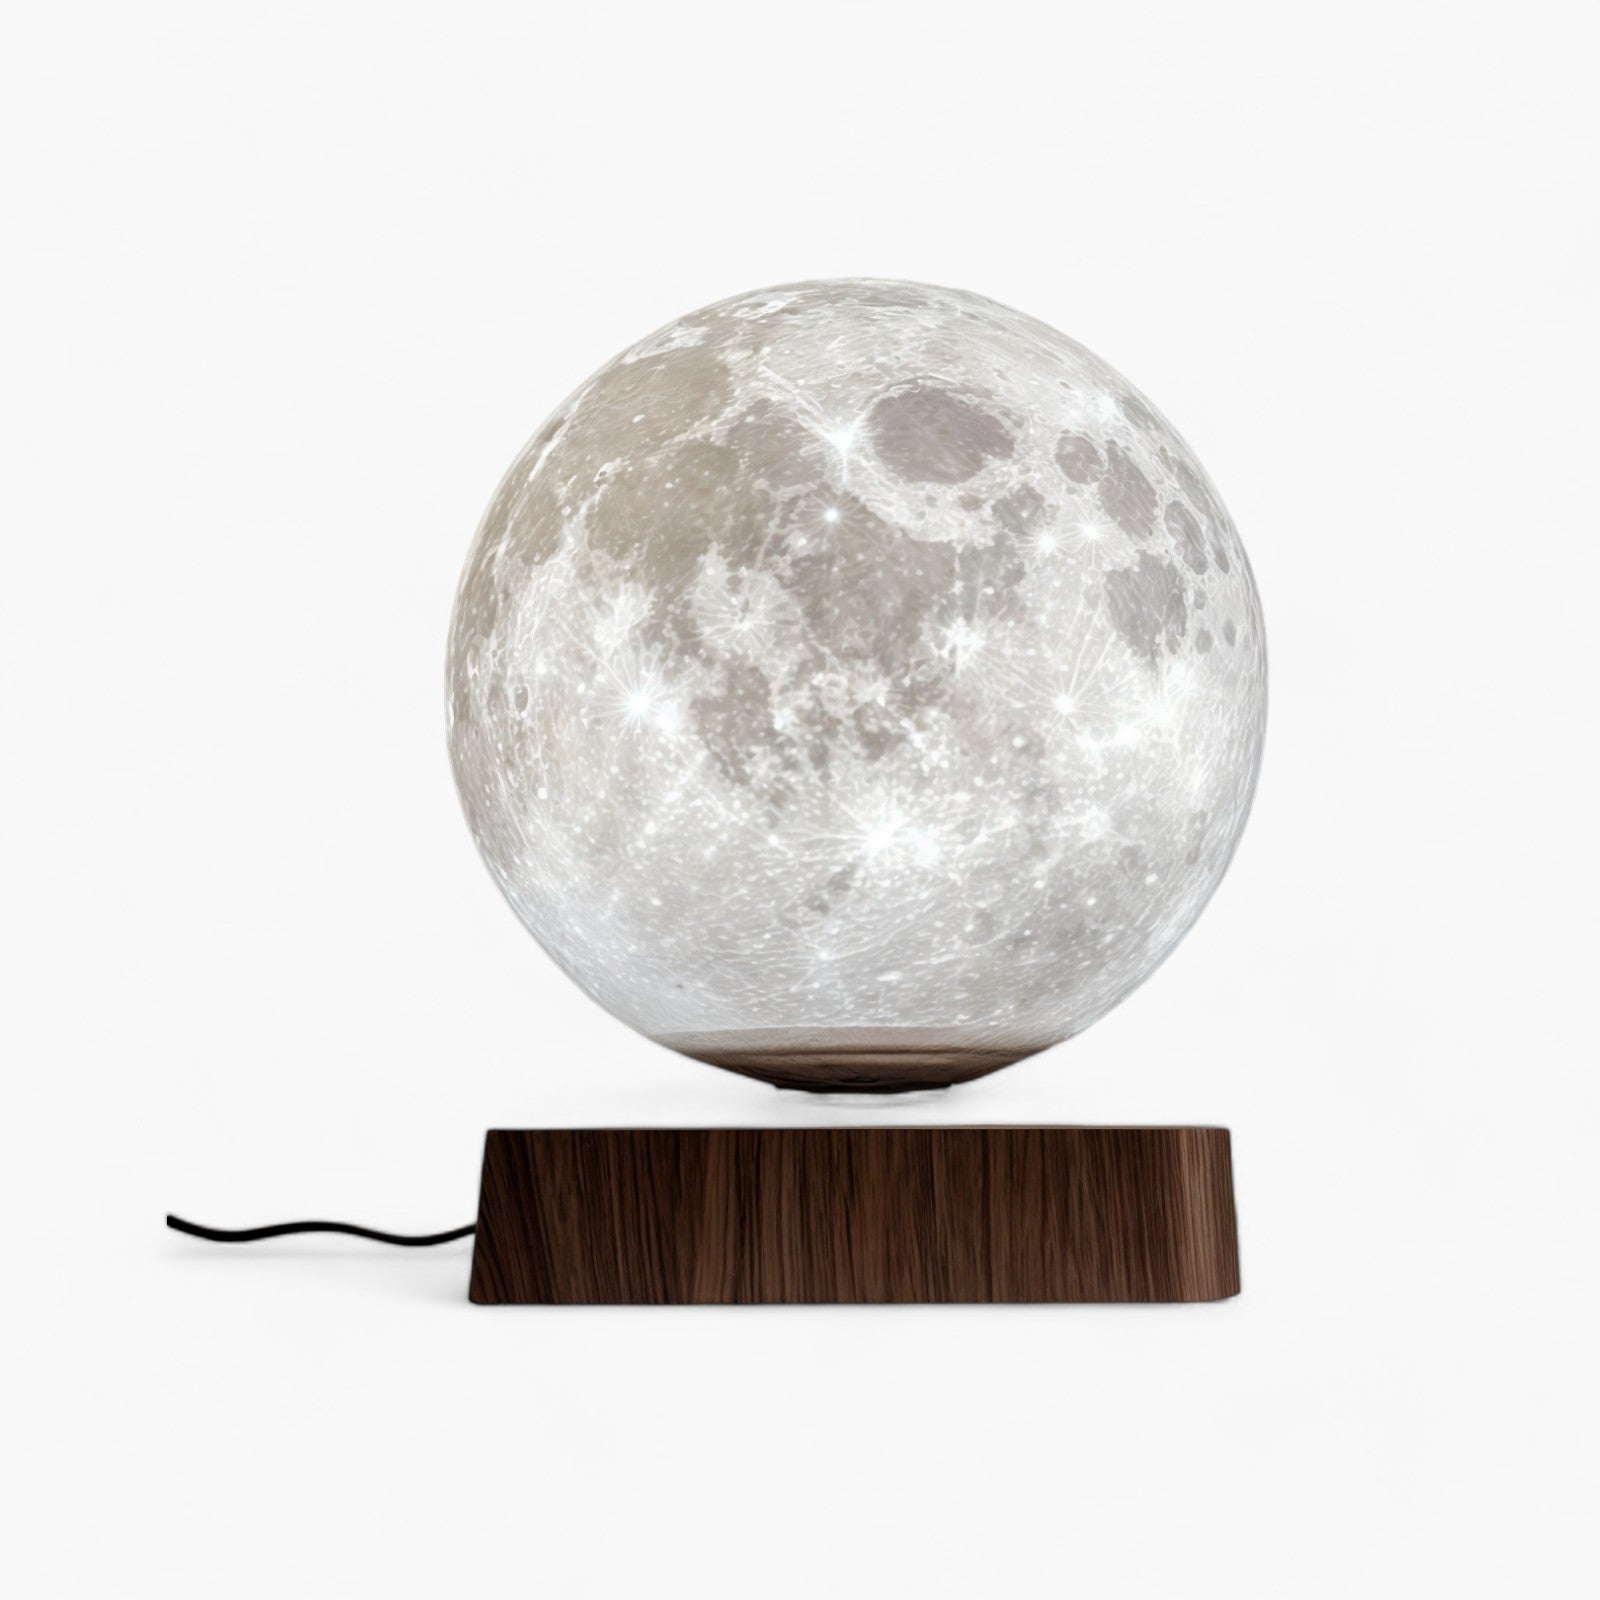 Schwebende Mondlampe – 3D Gedrucktes LED Nachtlicht, Touch & Fernbedienung, Warmweiß/Weiß/Gelb, Magnetische Levitation, Holz Basis, EU/US/UK/AU Stecker